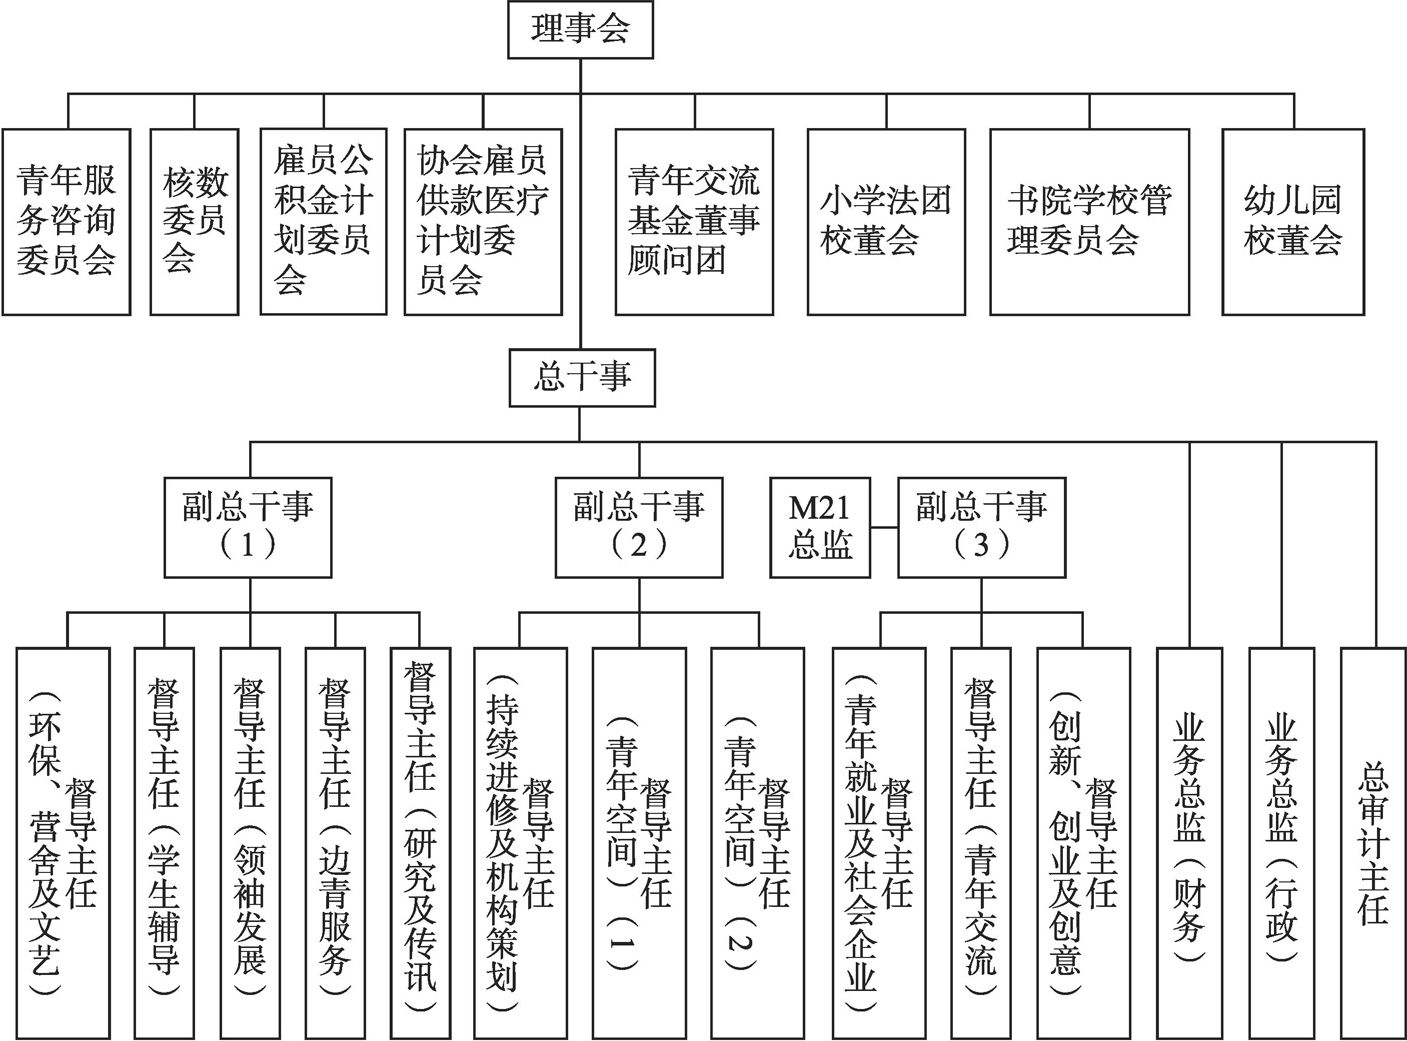 图4-6 QX组织架构